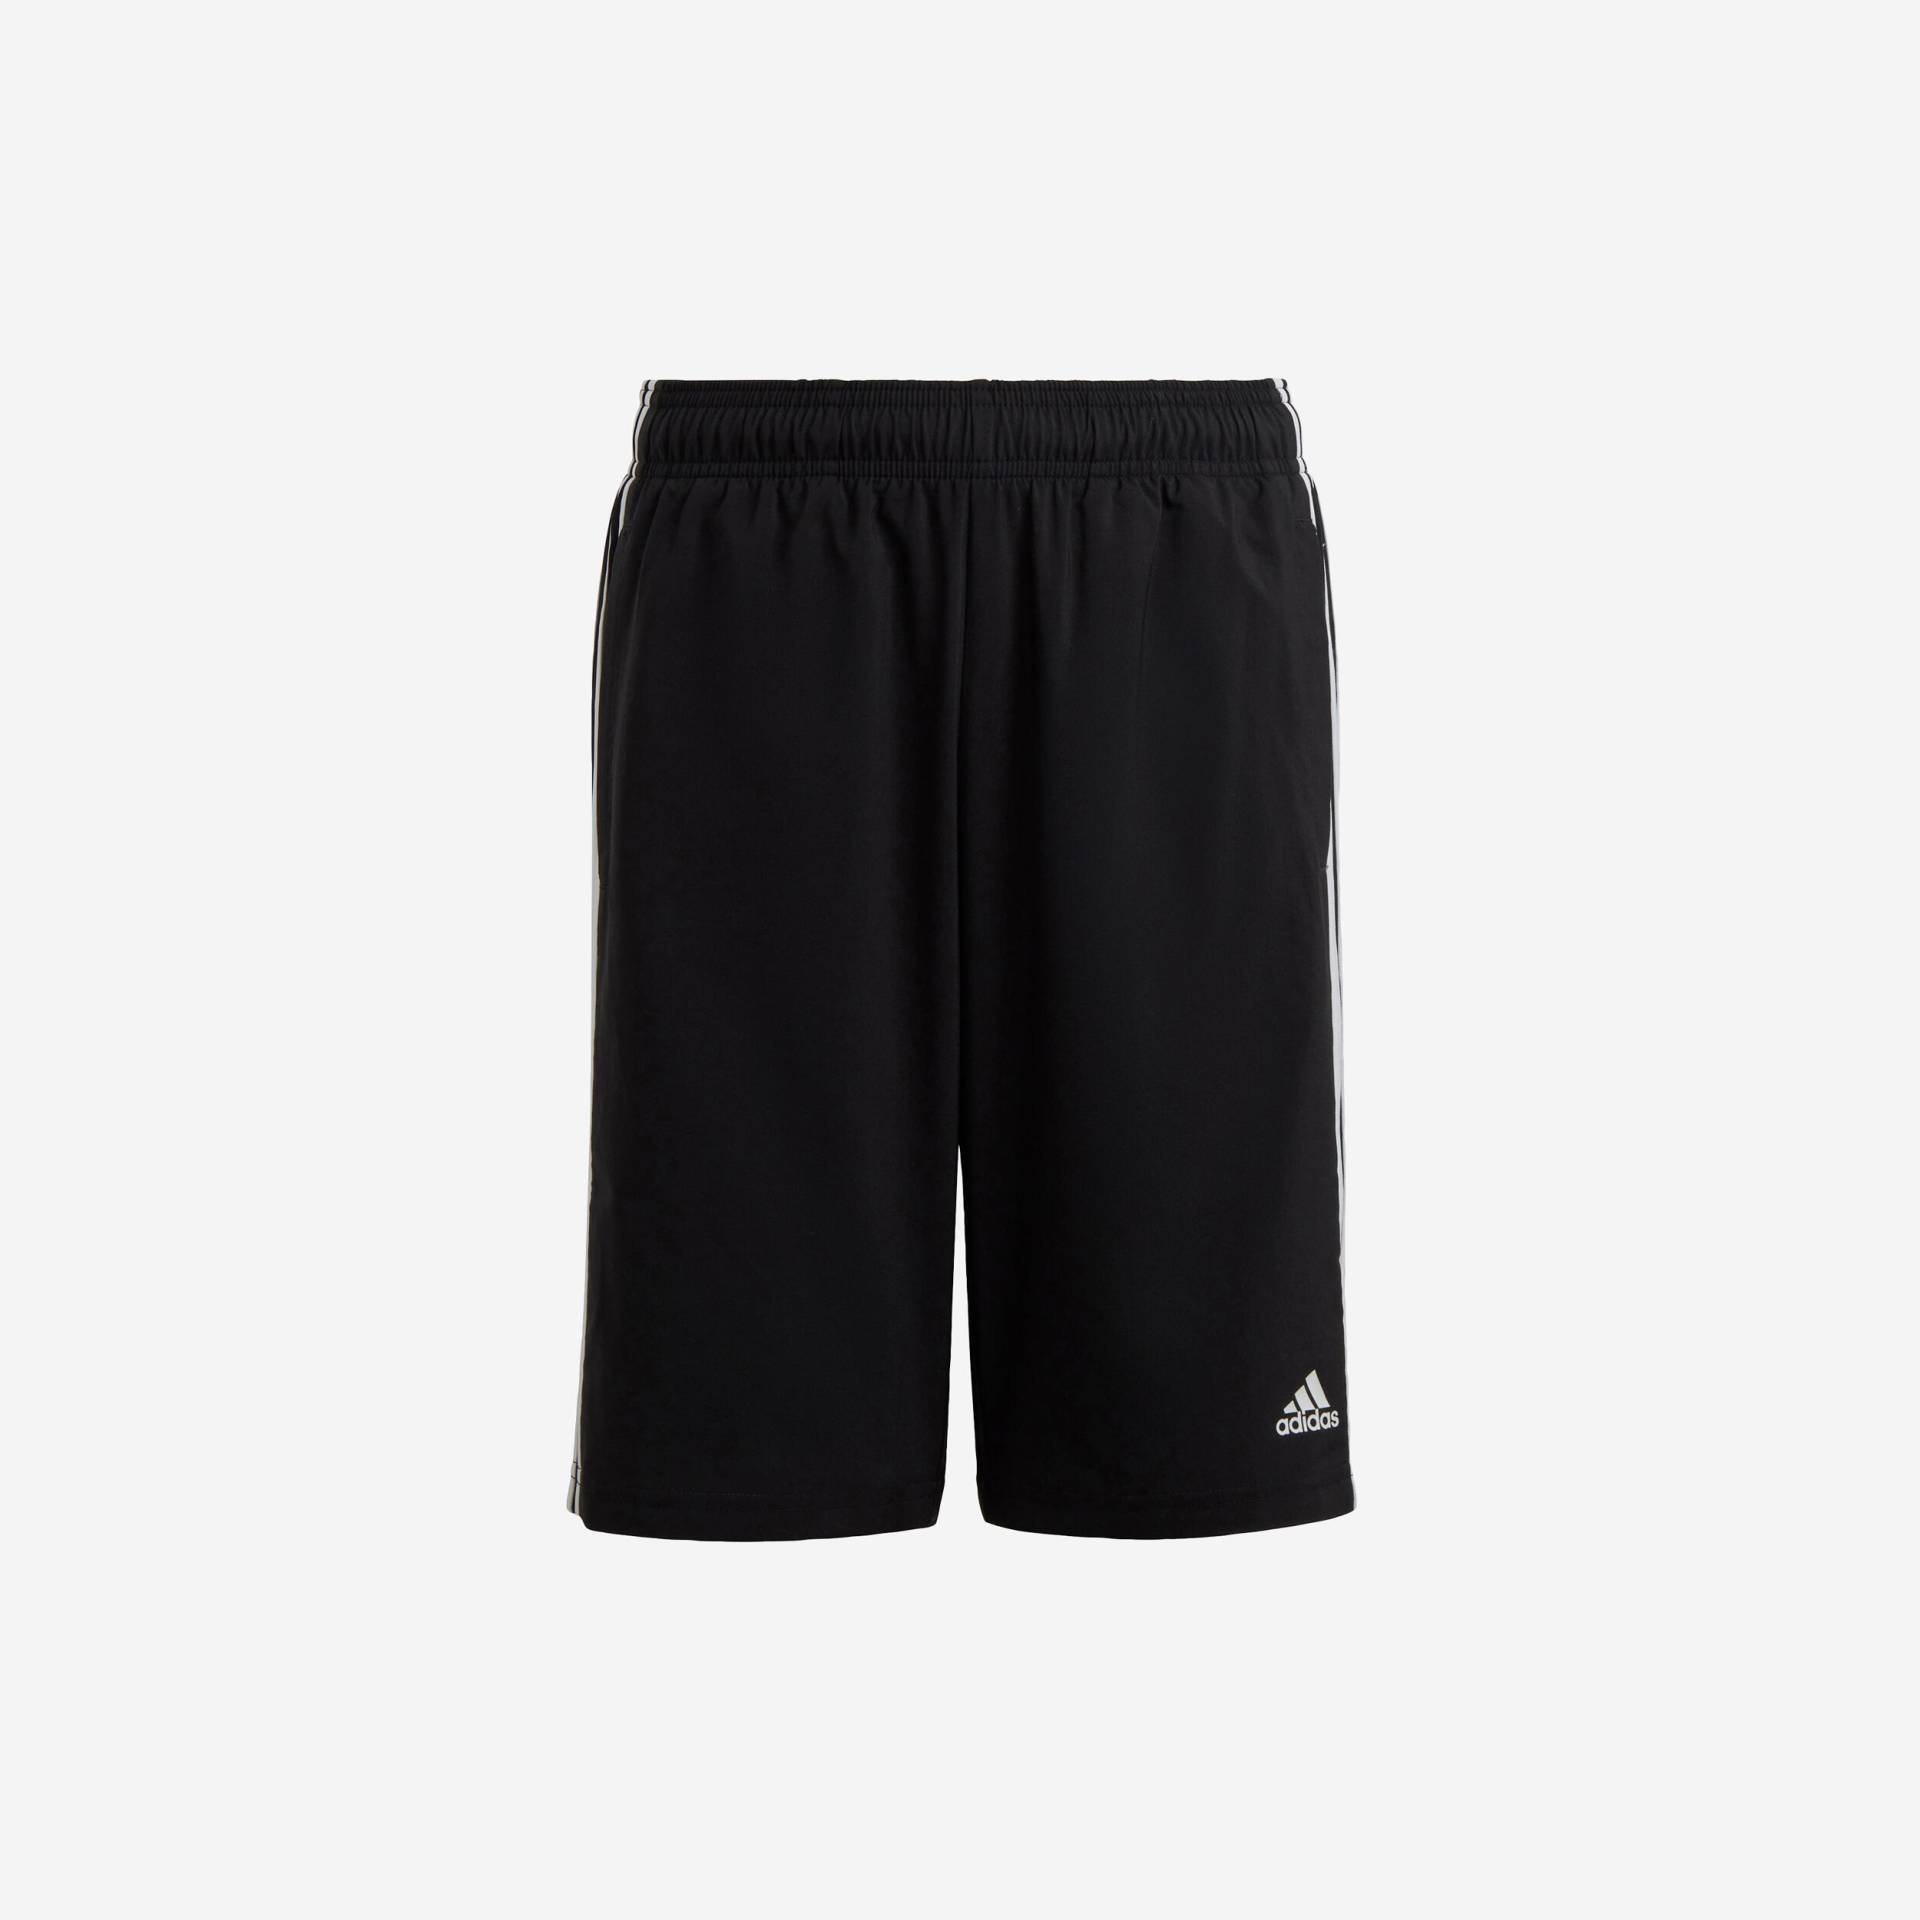 ADIDAS Shorts Kinder ‒ 3 Streifen schwarz von Adidas